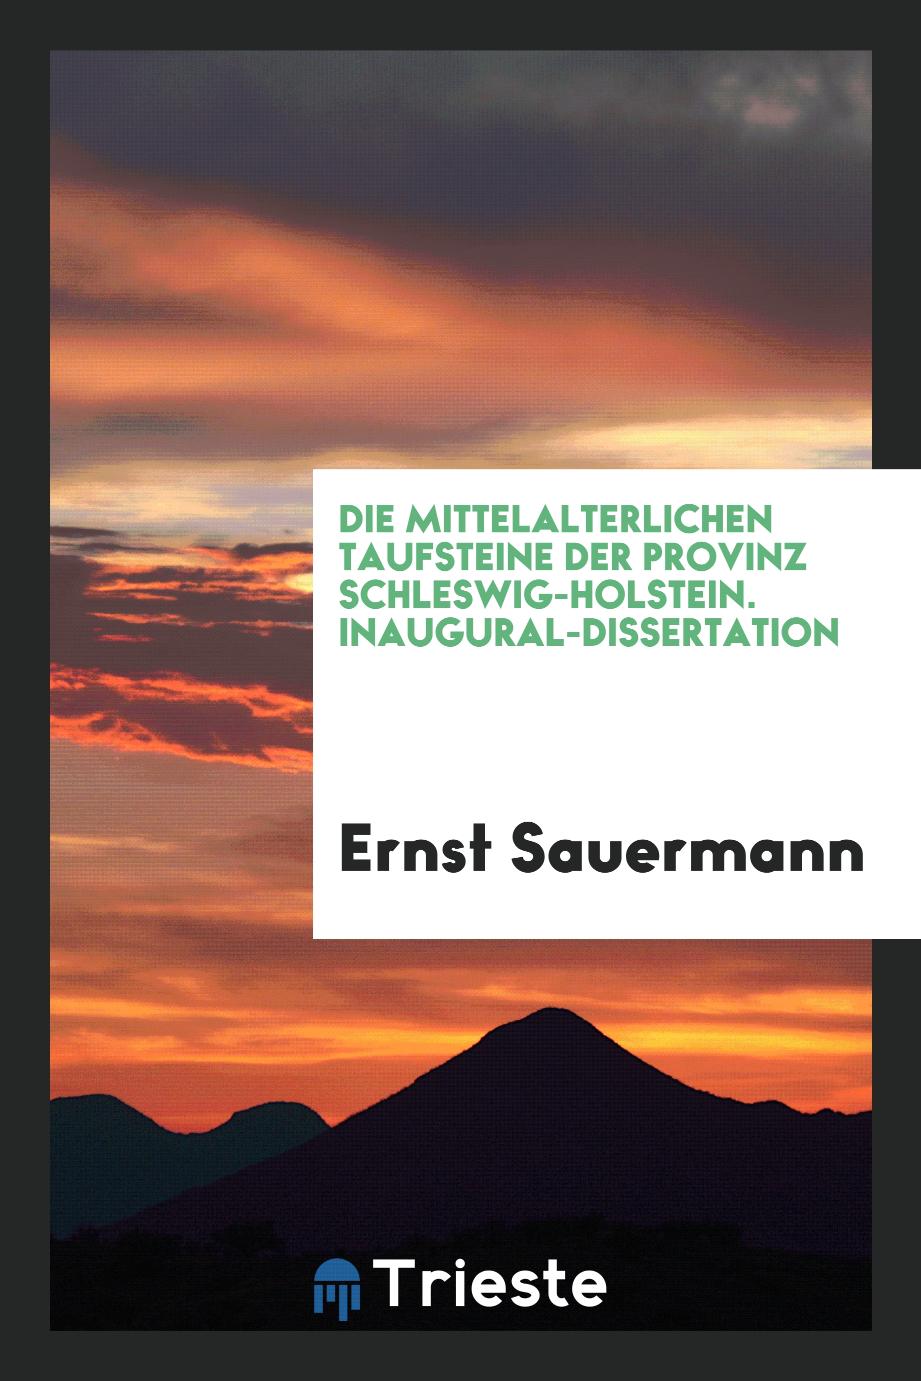 Die Mittelalterlichen Taufsteine der Provinz Schleswig-Holstein. Inaugural-Dissertation